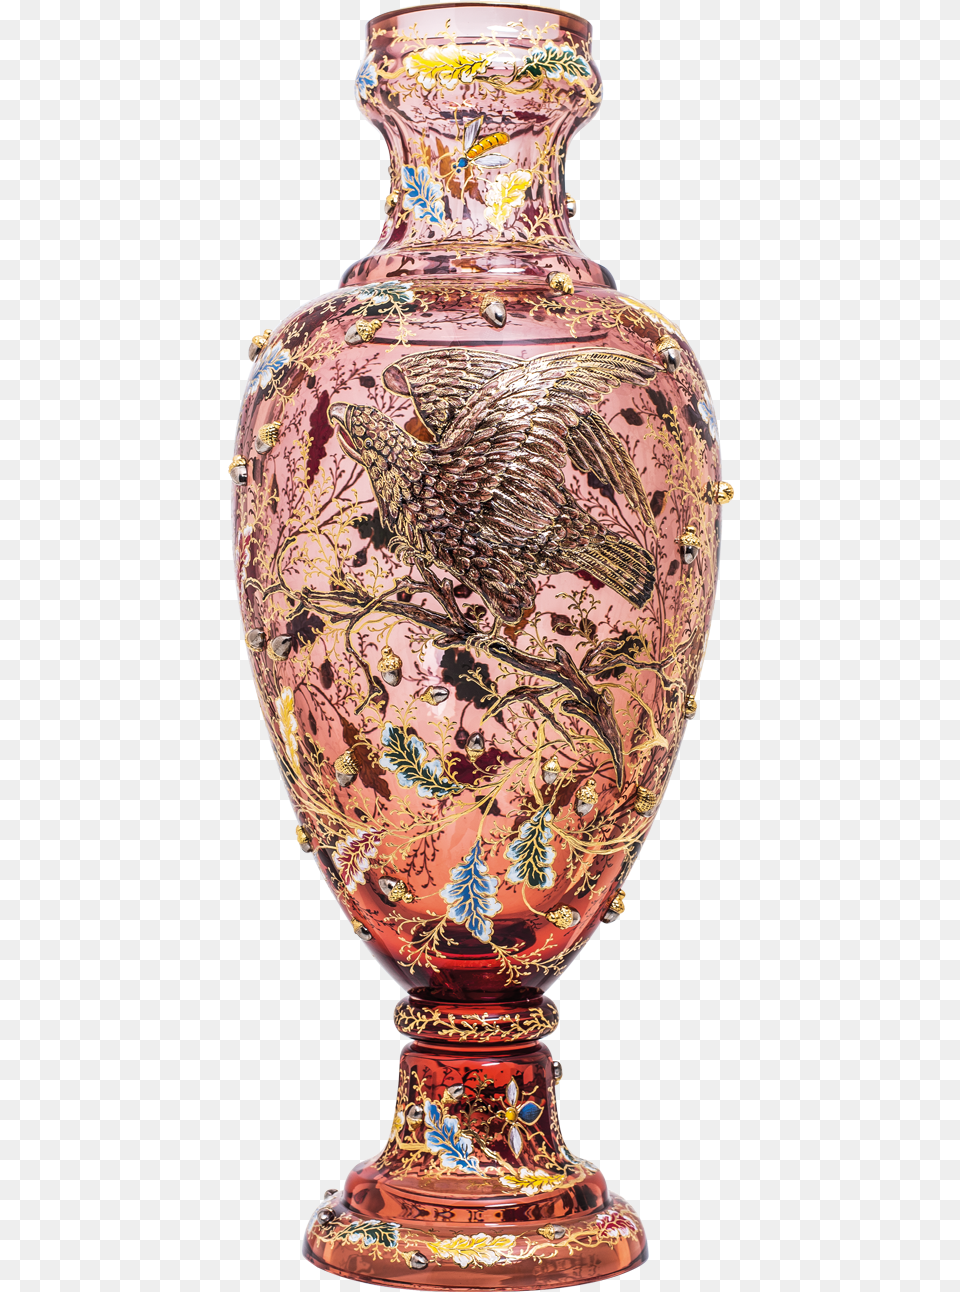 Eagle, Vase, Pottery, Porcelain, Jar Free Transparent Png